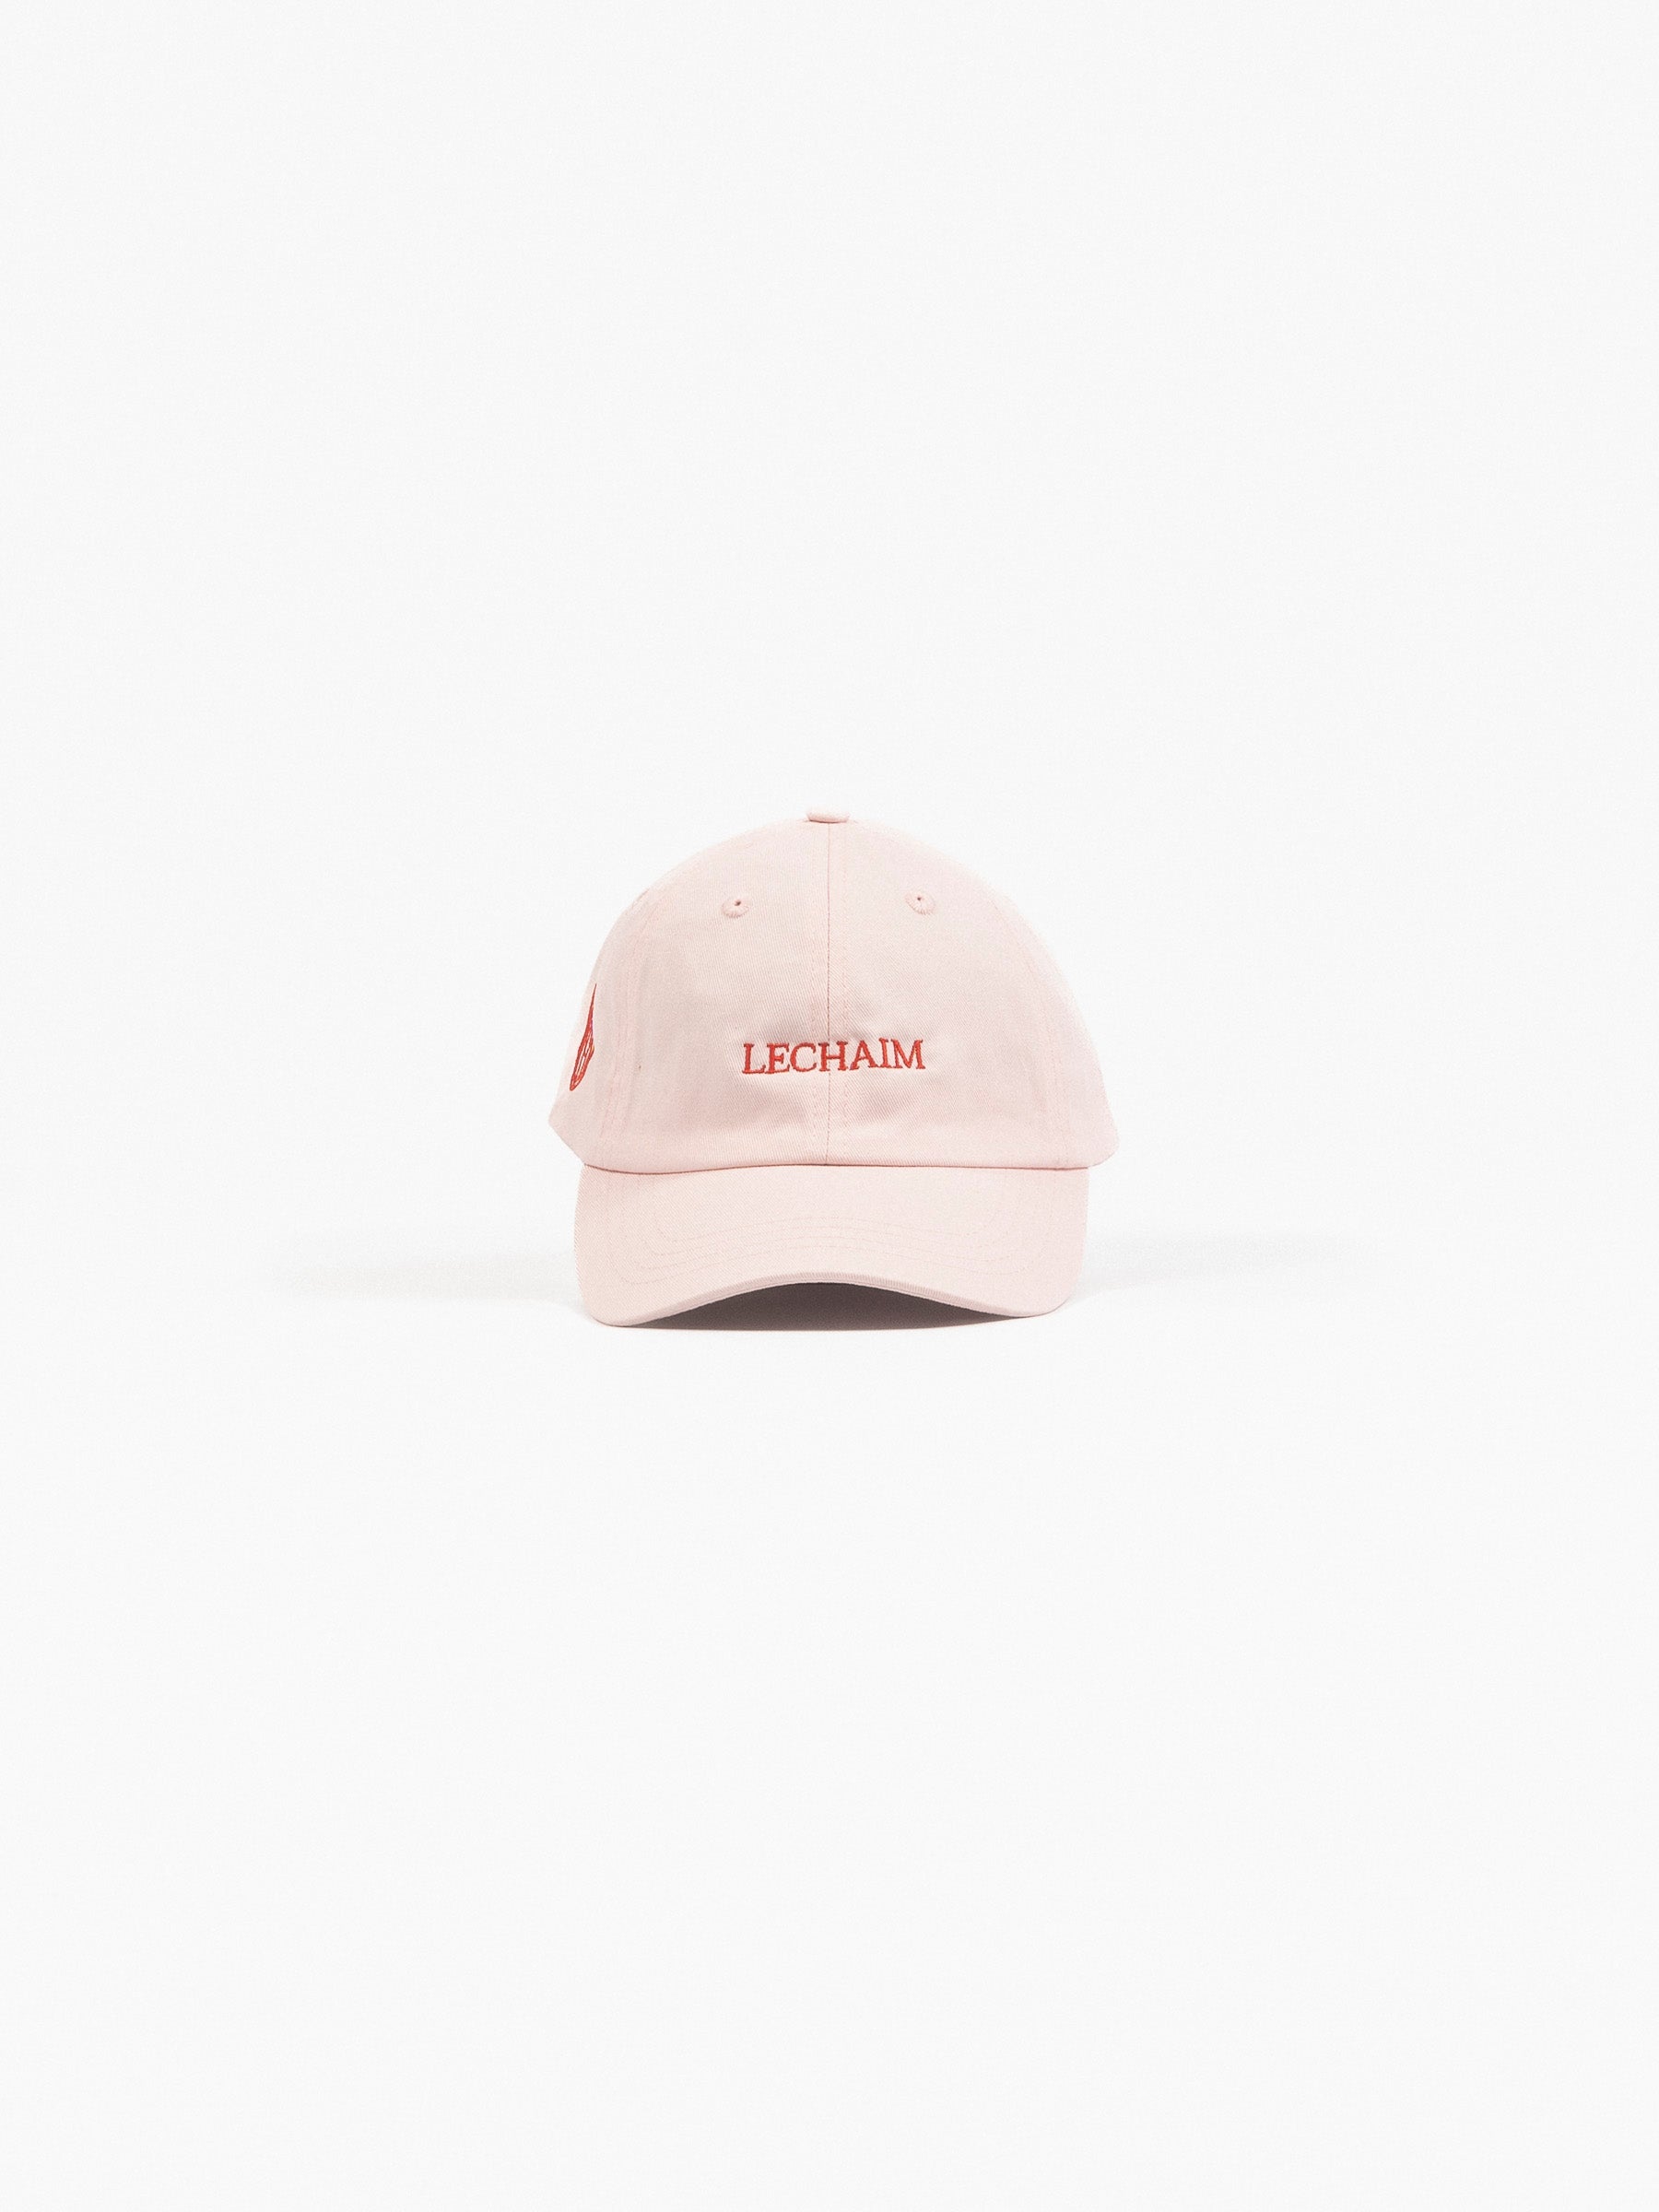 Lechaim Vintage Cap Pink/Red